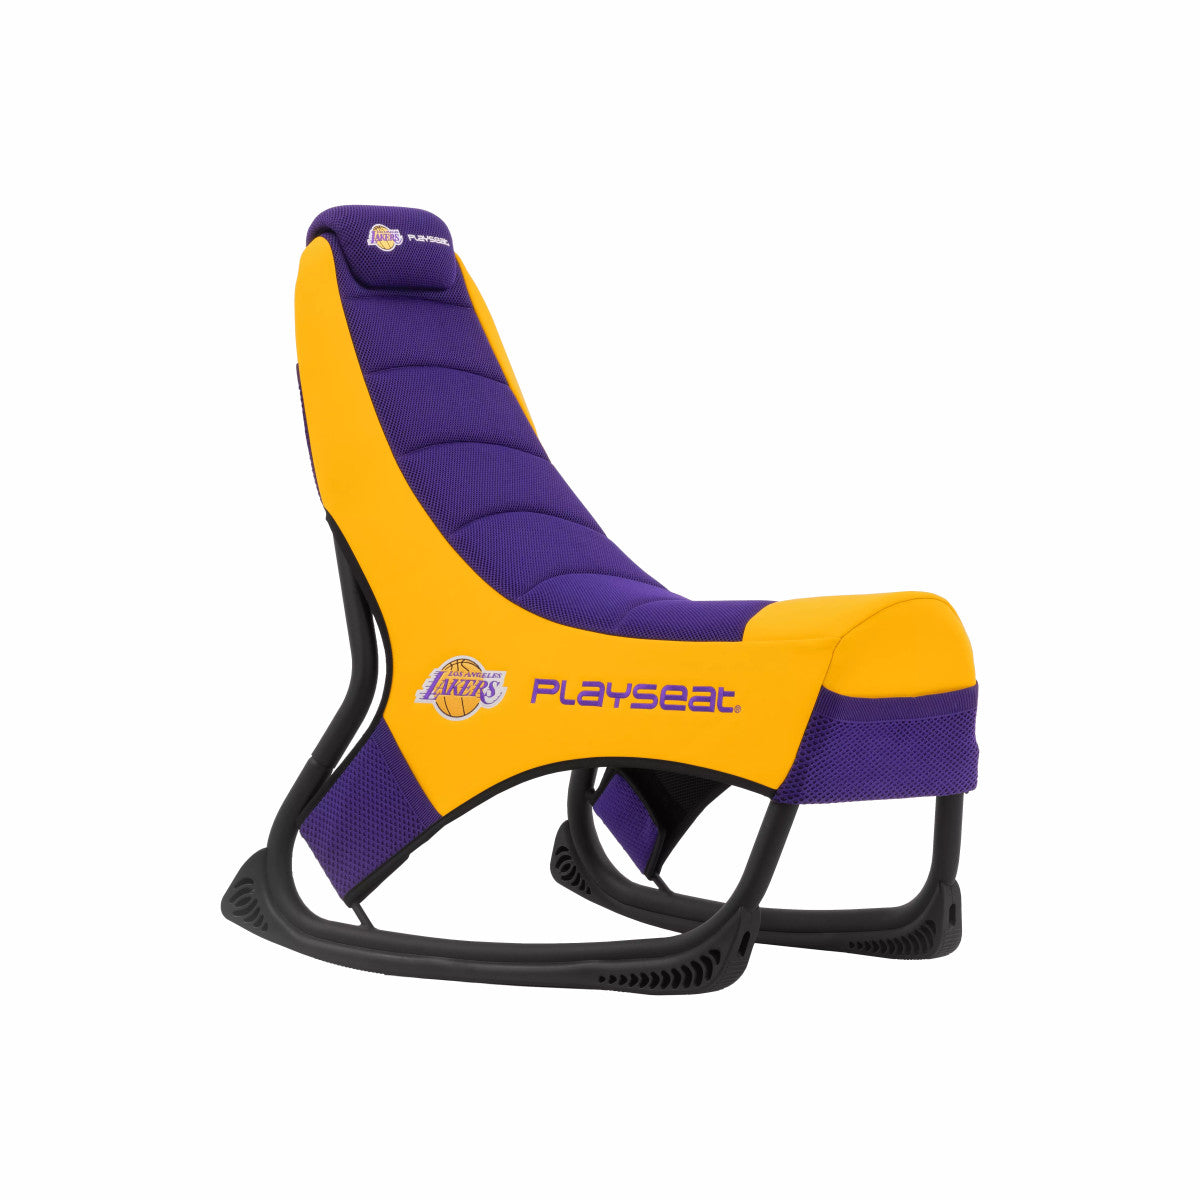 PLAYSEAT® CHAMP NBA Padded Seat - Purple/Yellow